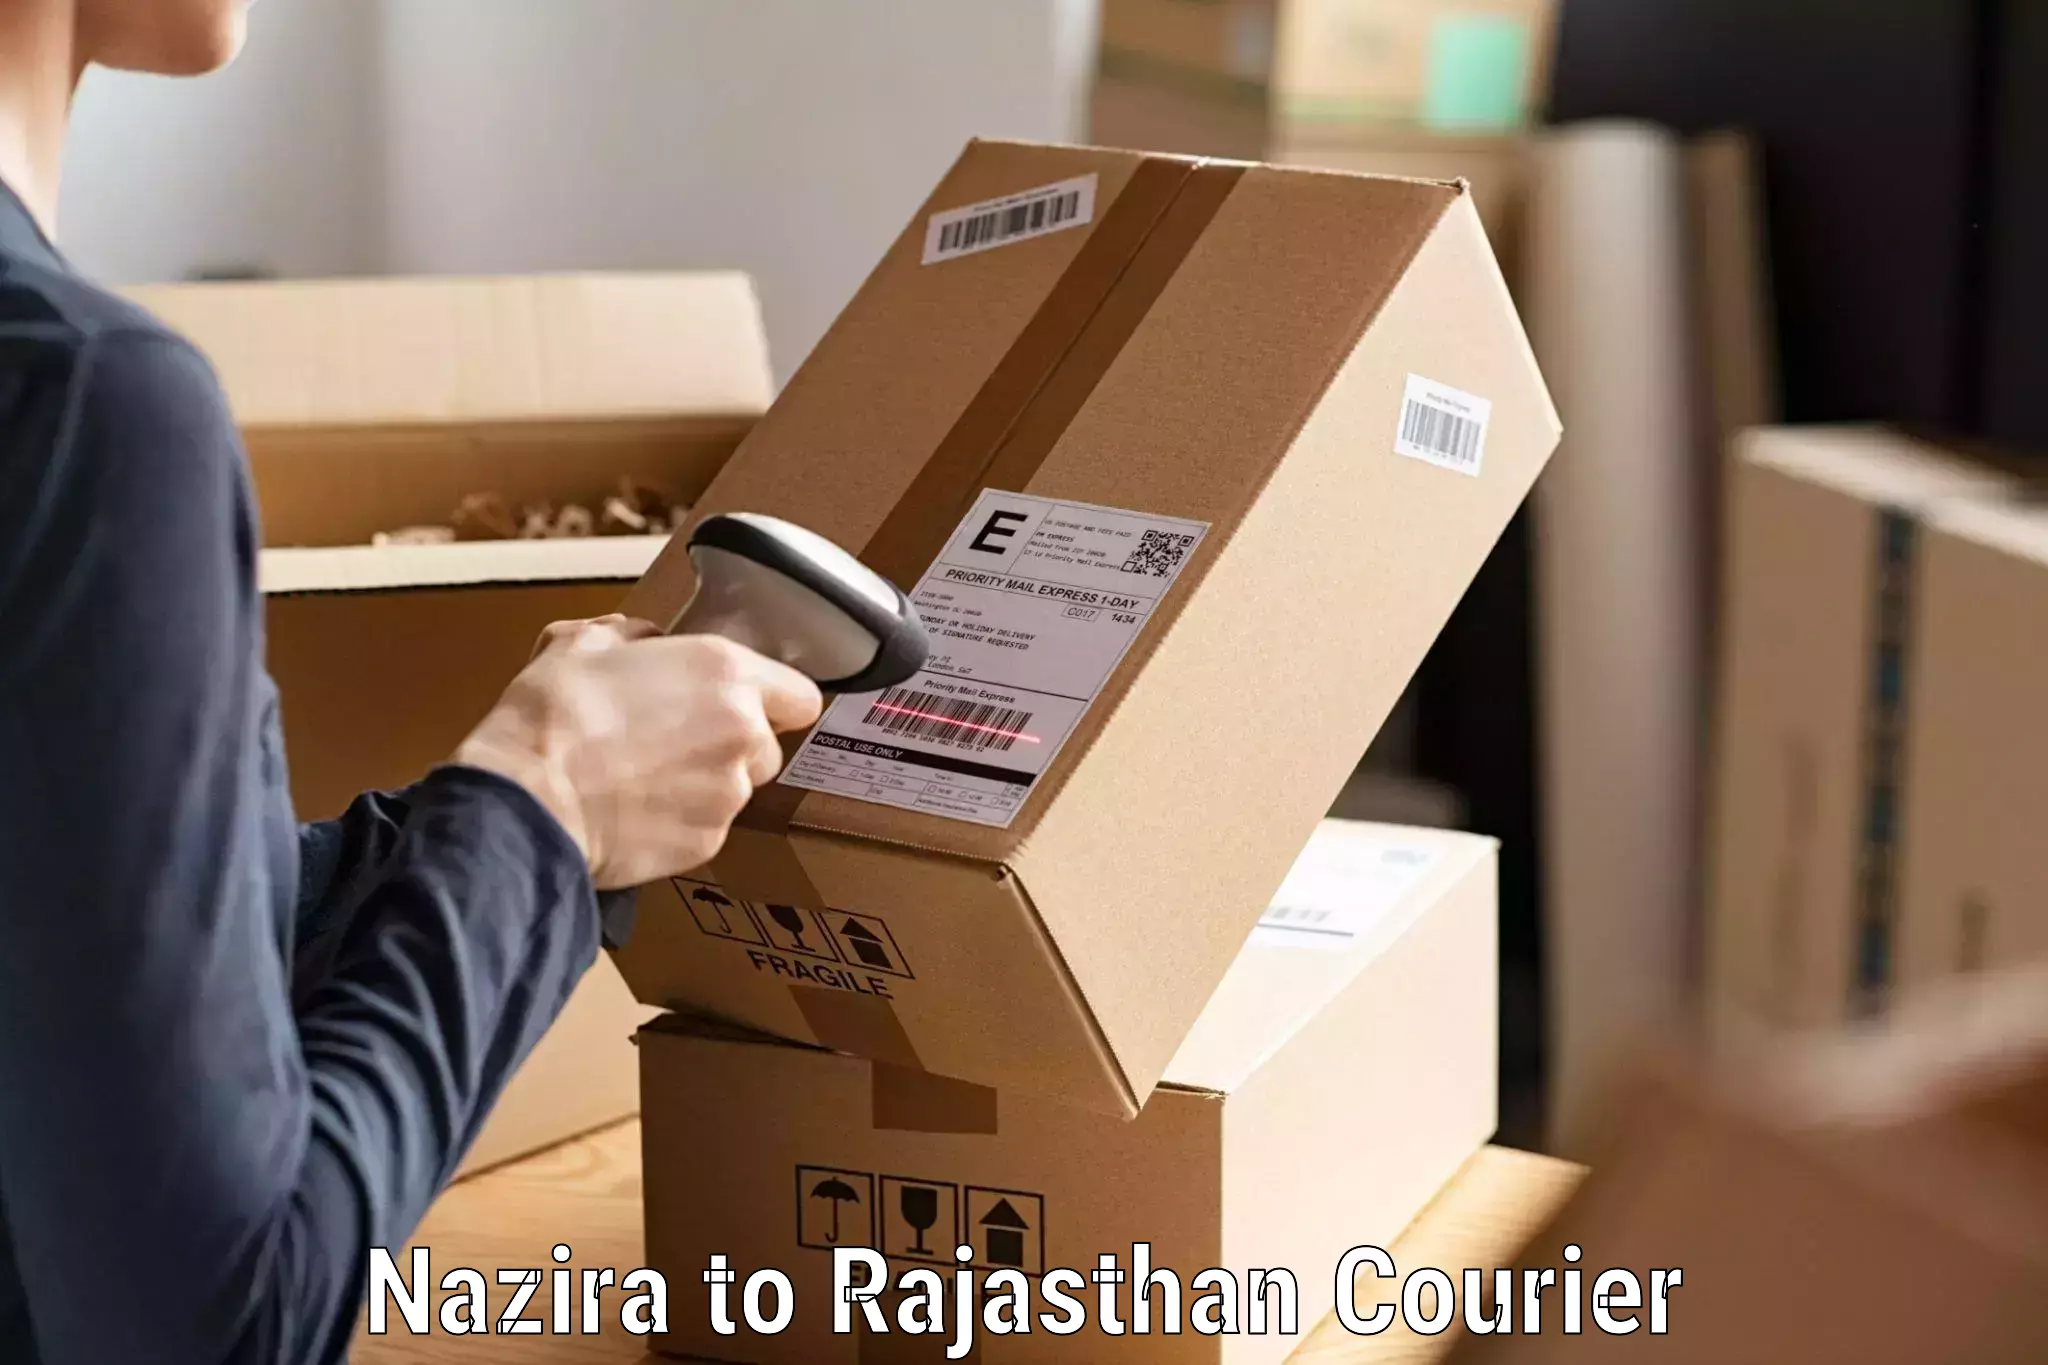 Optimized shipping routes Nazira to Aklera